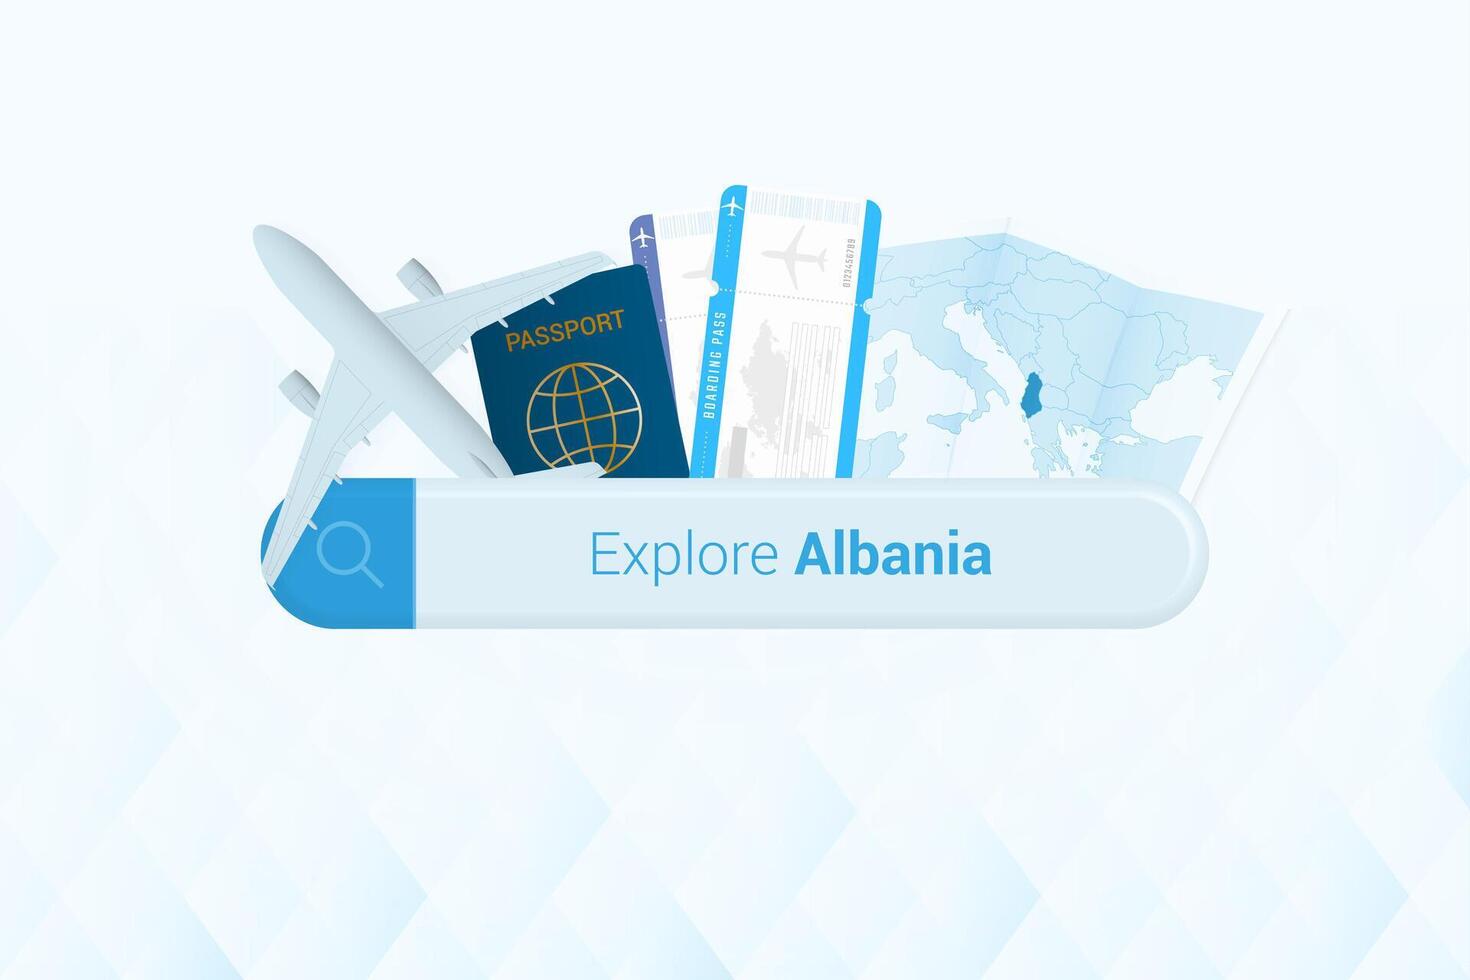 recherche des billets à Albanie ou Voyage destination dans Albanie. recherche bar avec avion, passeport, embarquement passer, des billets et carte. vecteur